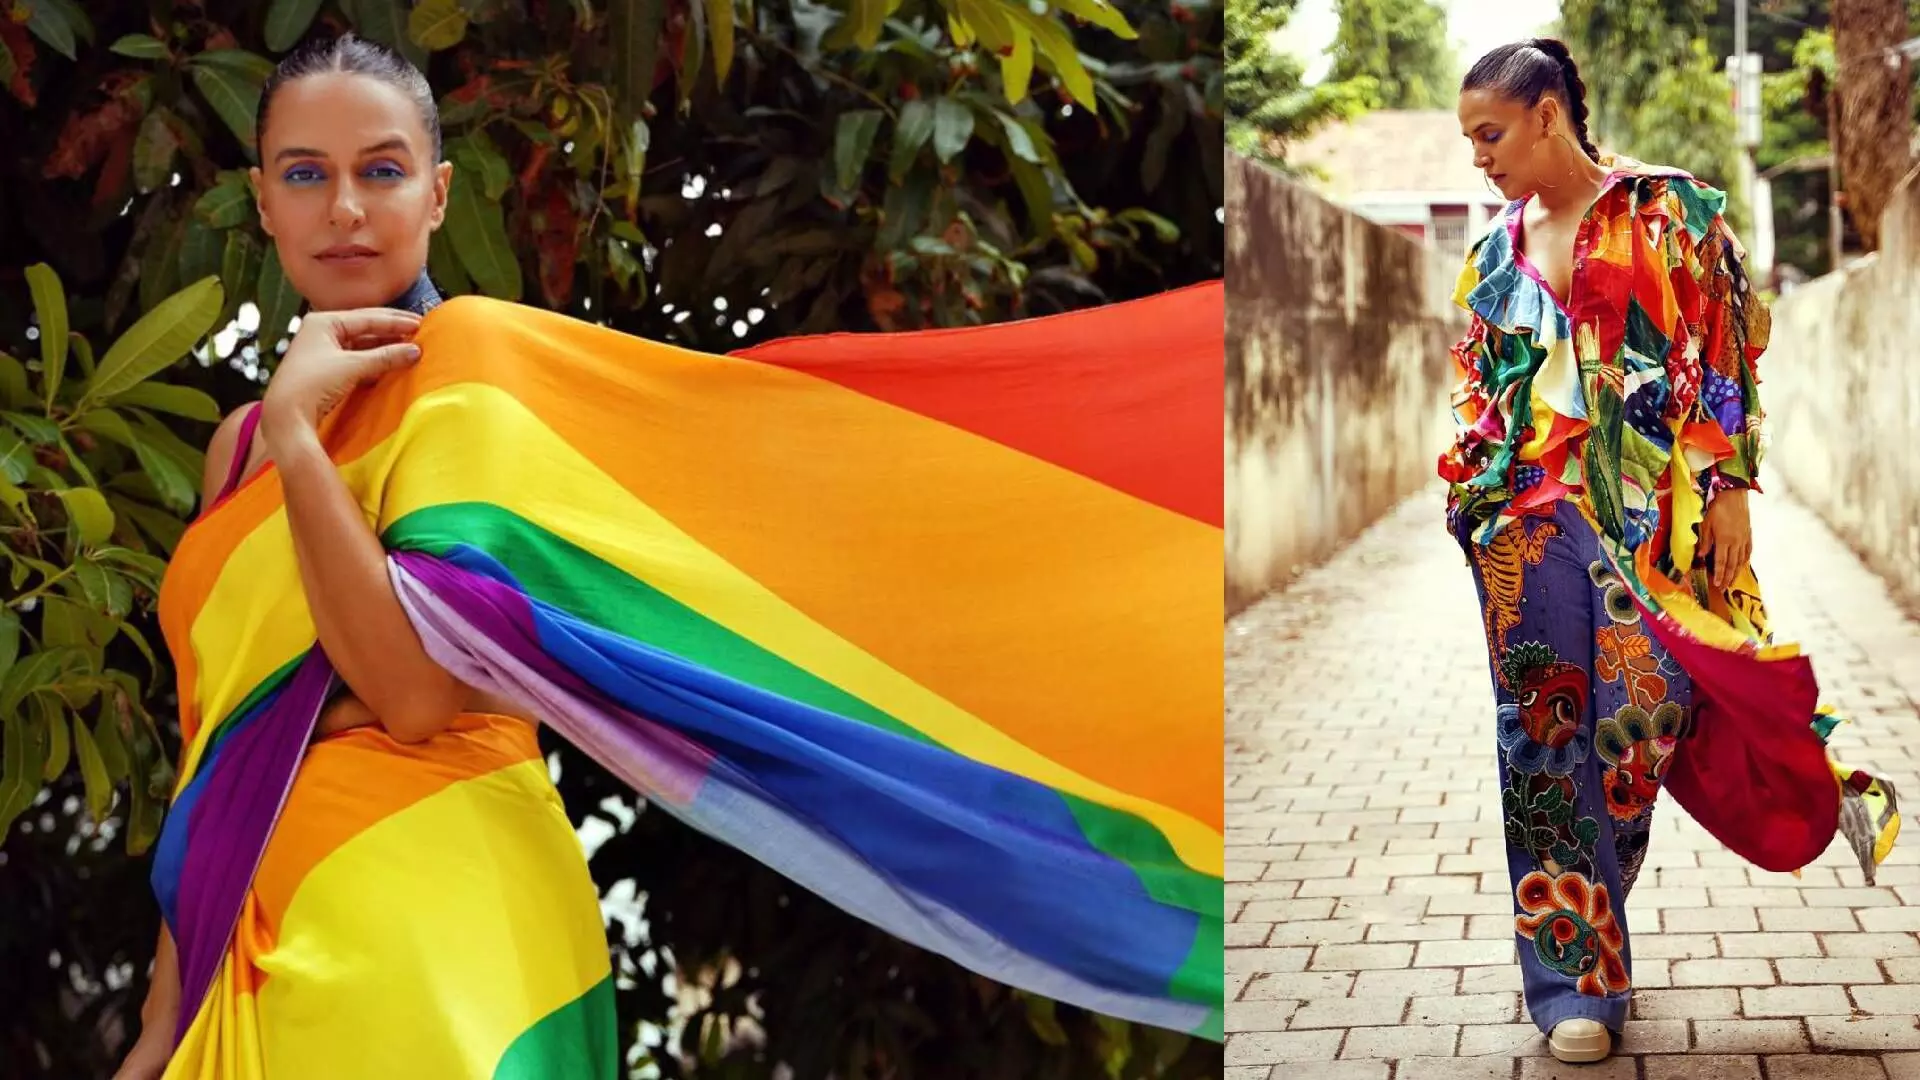 नेहा धुपियाचा LGBTQ ला पाठिंबा ,केले खास फोटोशुट